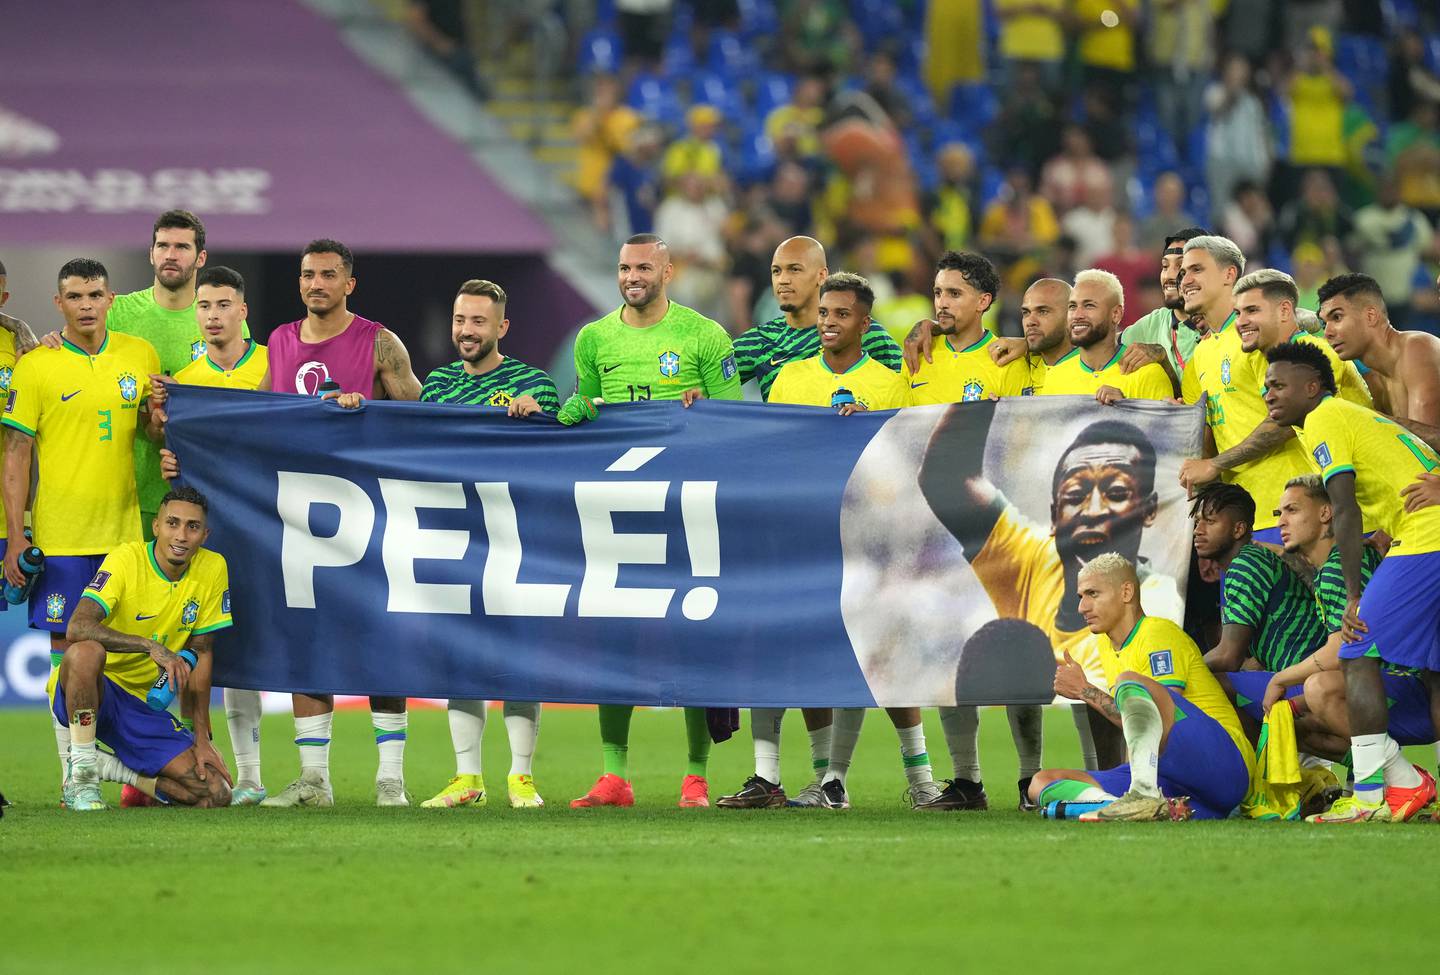 Brasilianische Spieler bringen nach dem Achtelfinale der Weltmeisterschaft im Stadion 974 in Doha ein Pele-Banner auf das Spielfeld